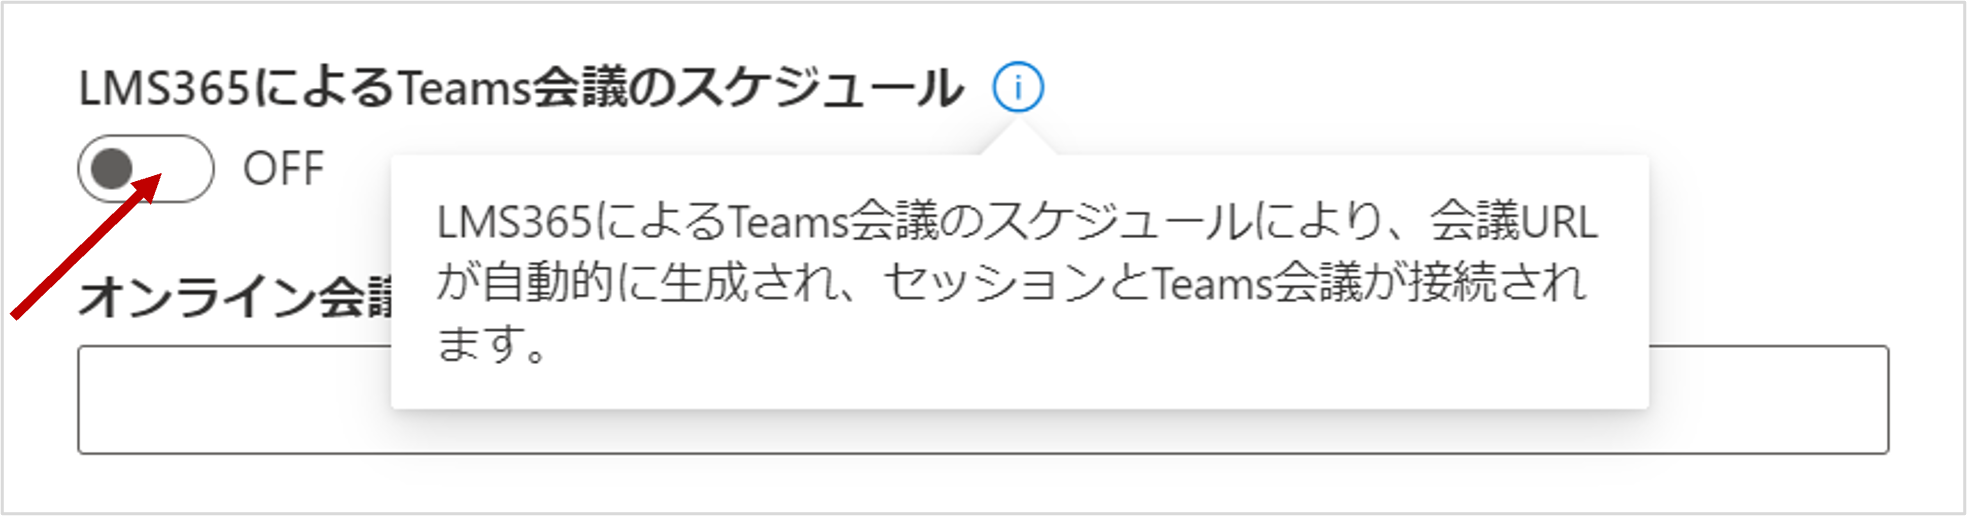 Teams___.png